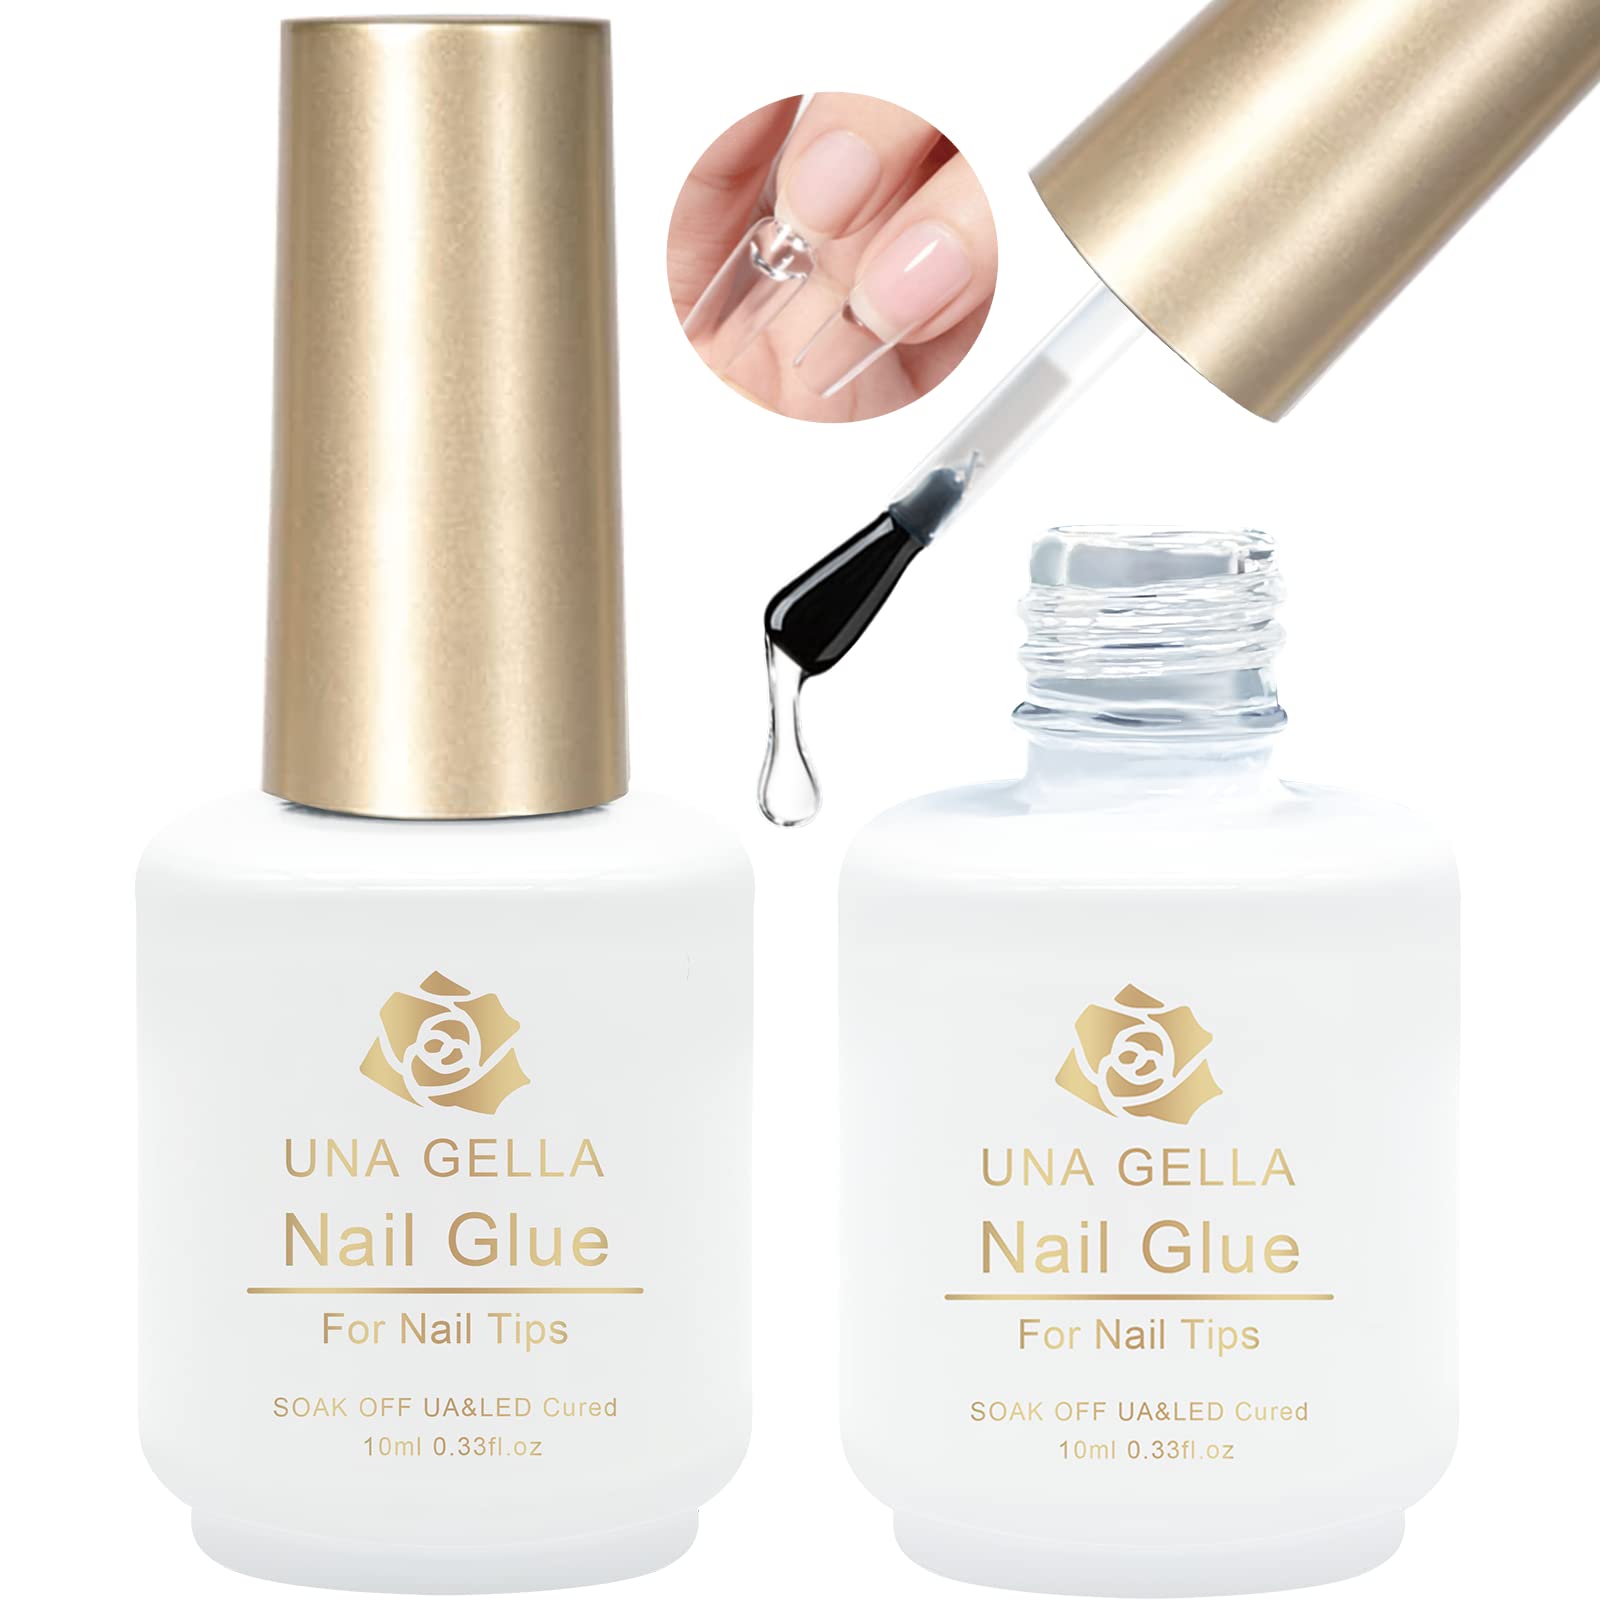 Super Strong Nail Glue For Acrylic Nails, Nail Tips and Press On Nails  (8ml) NYK1 Nail Bond Brush On Nail Glue For Press On Nails Long Lasting Acrylic  Nail Glue For Nail